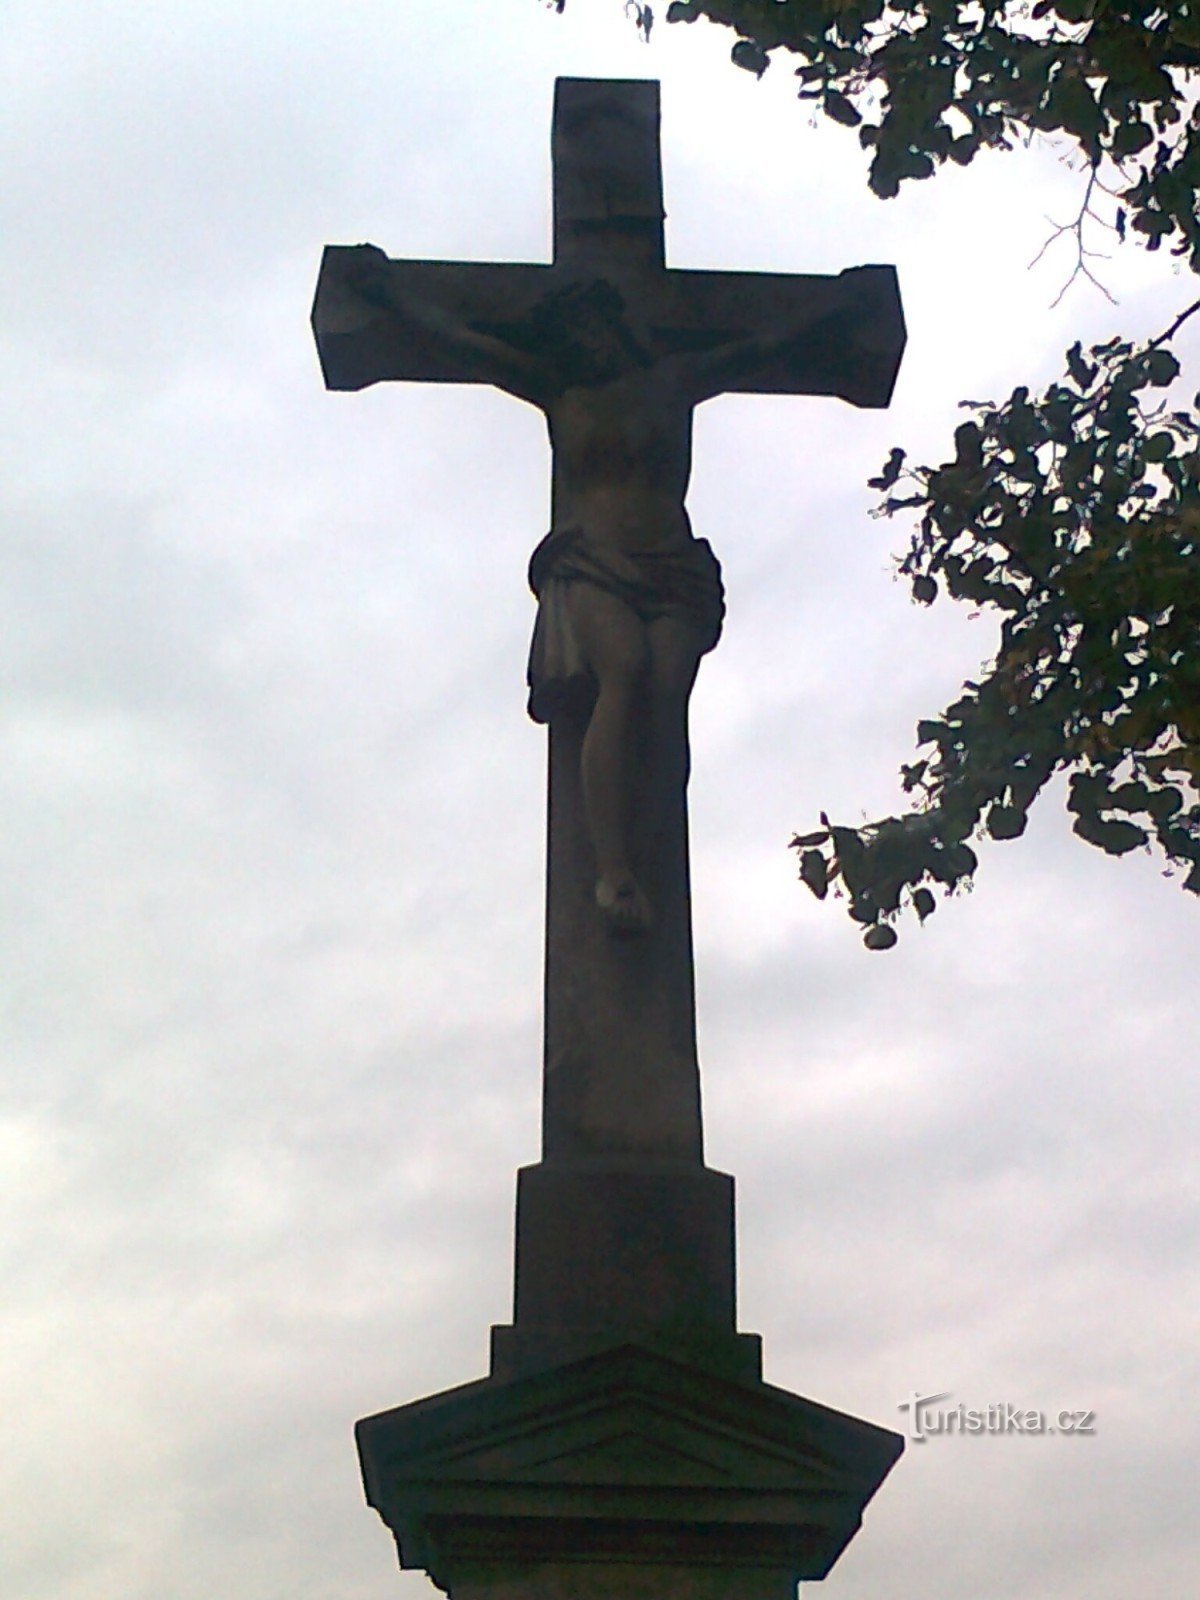 Усов - каменный крест на дороге Усов - Ставенице